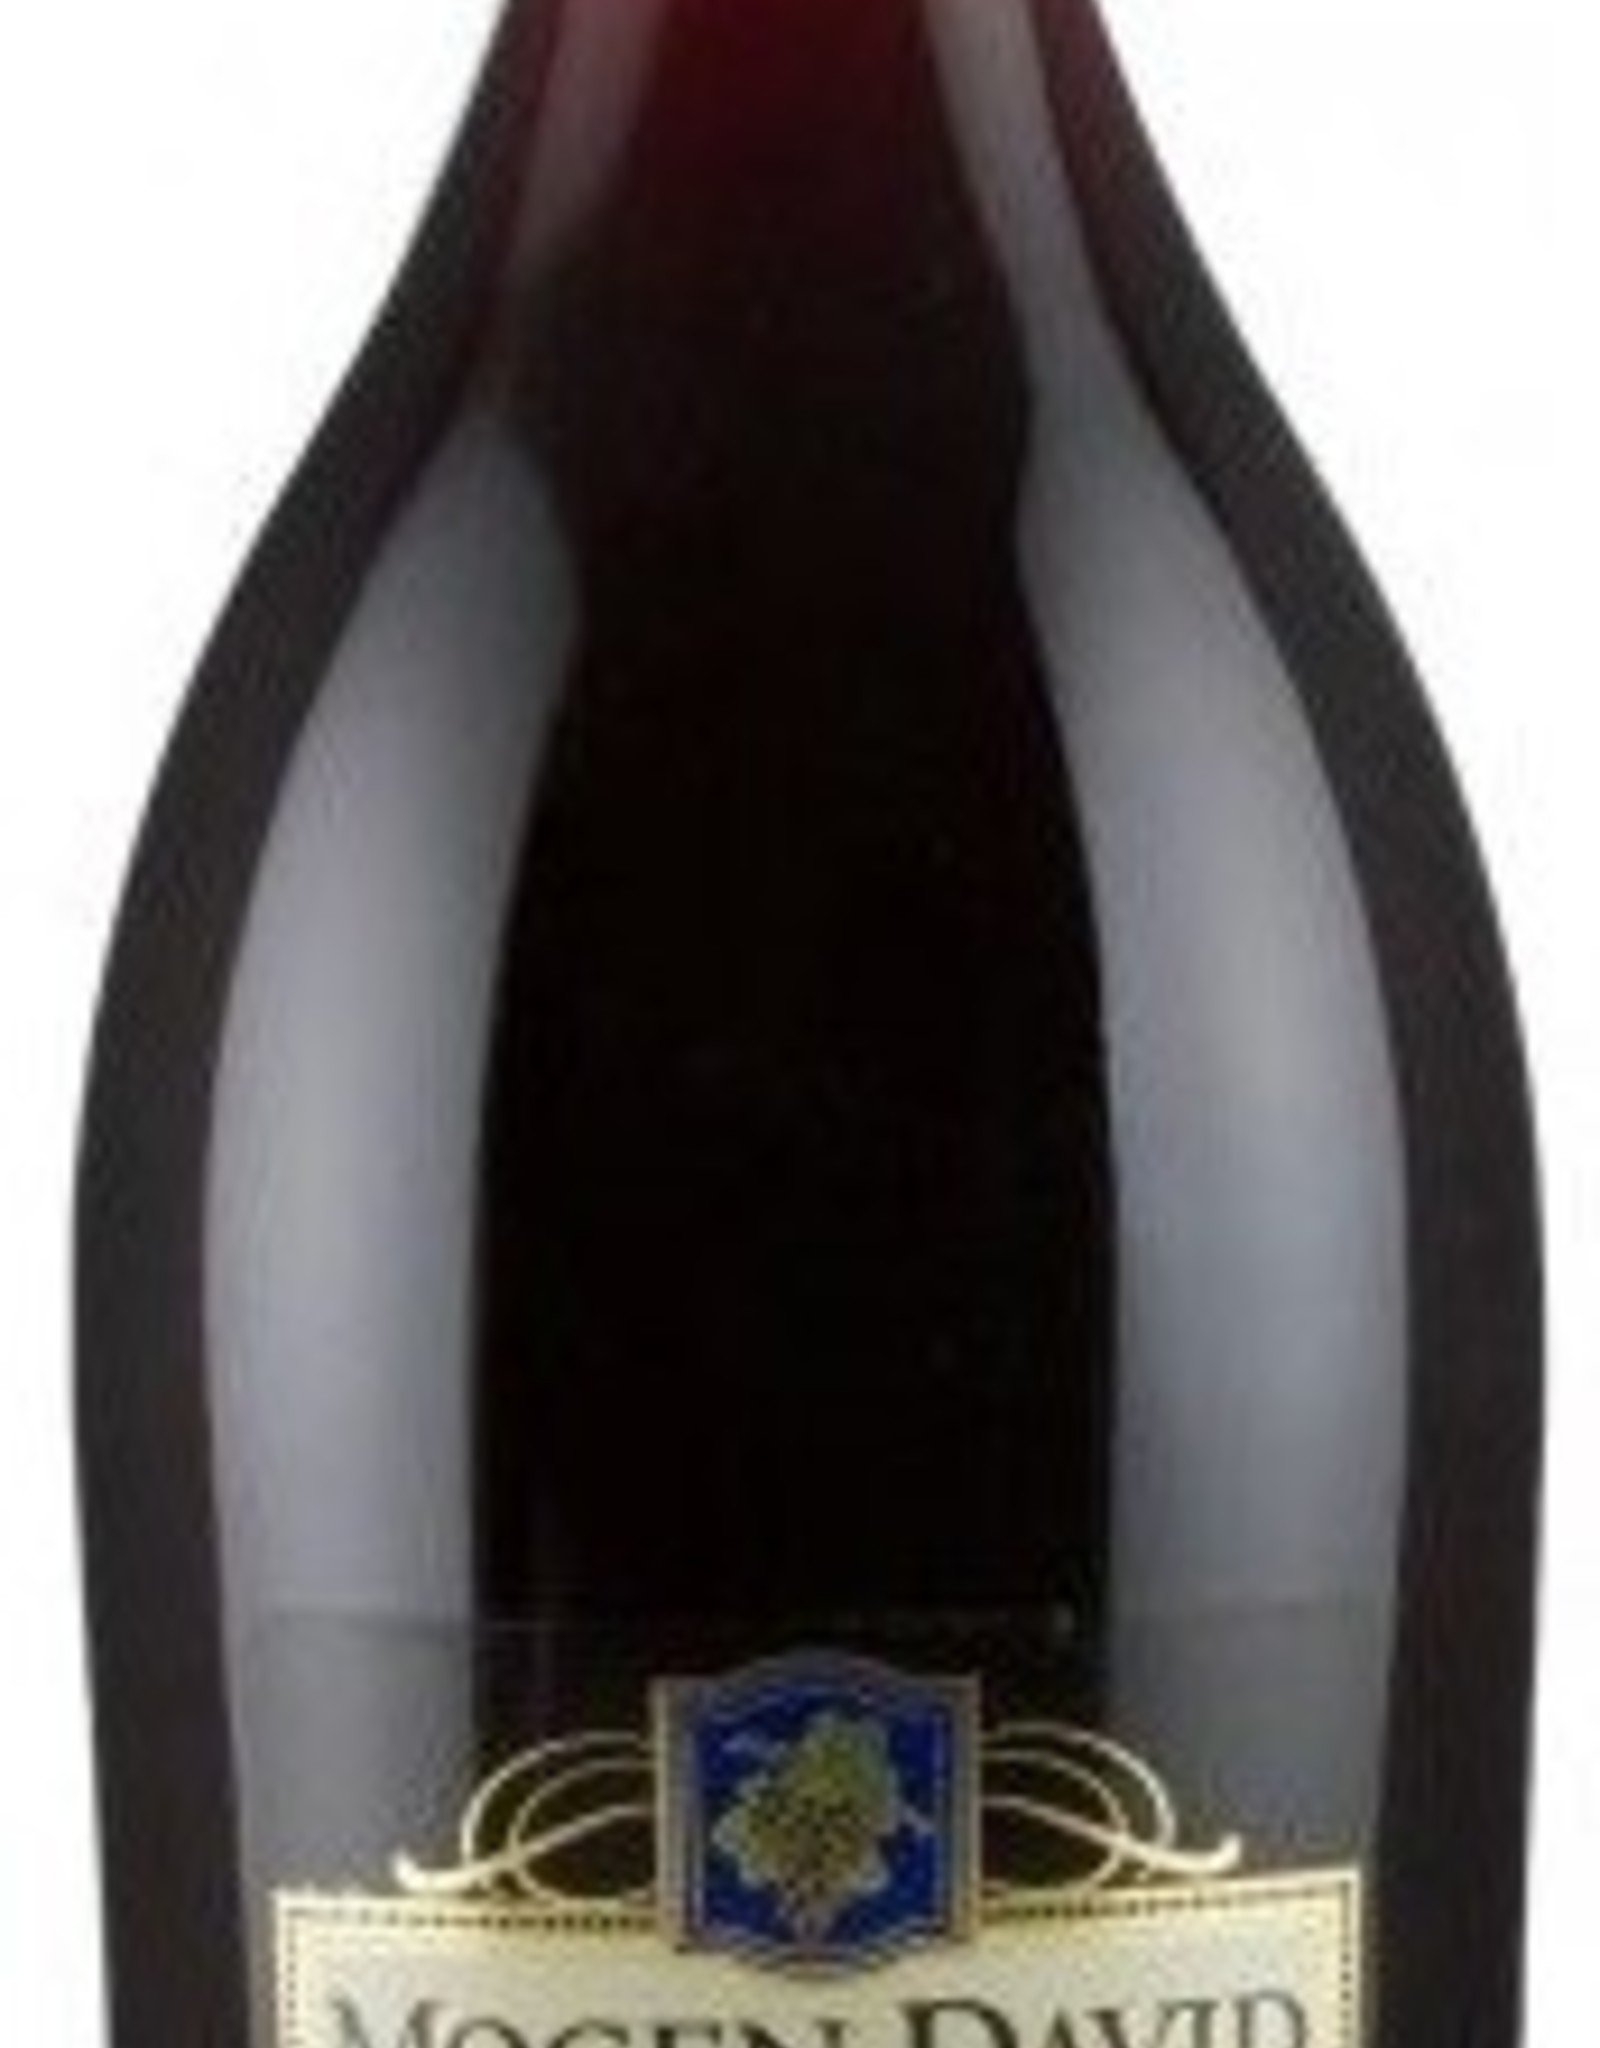 Mogen David Concord Wine 1.5L